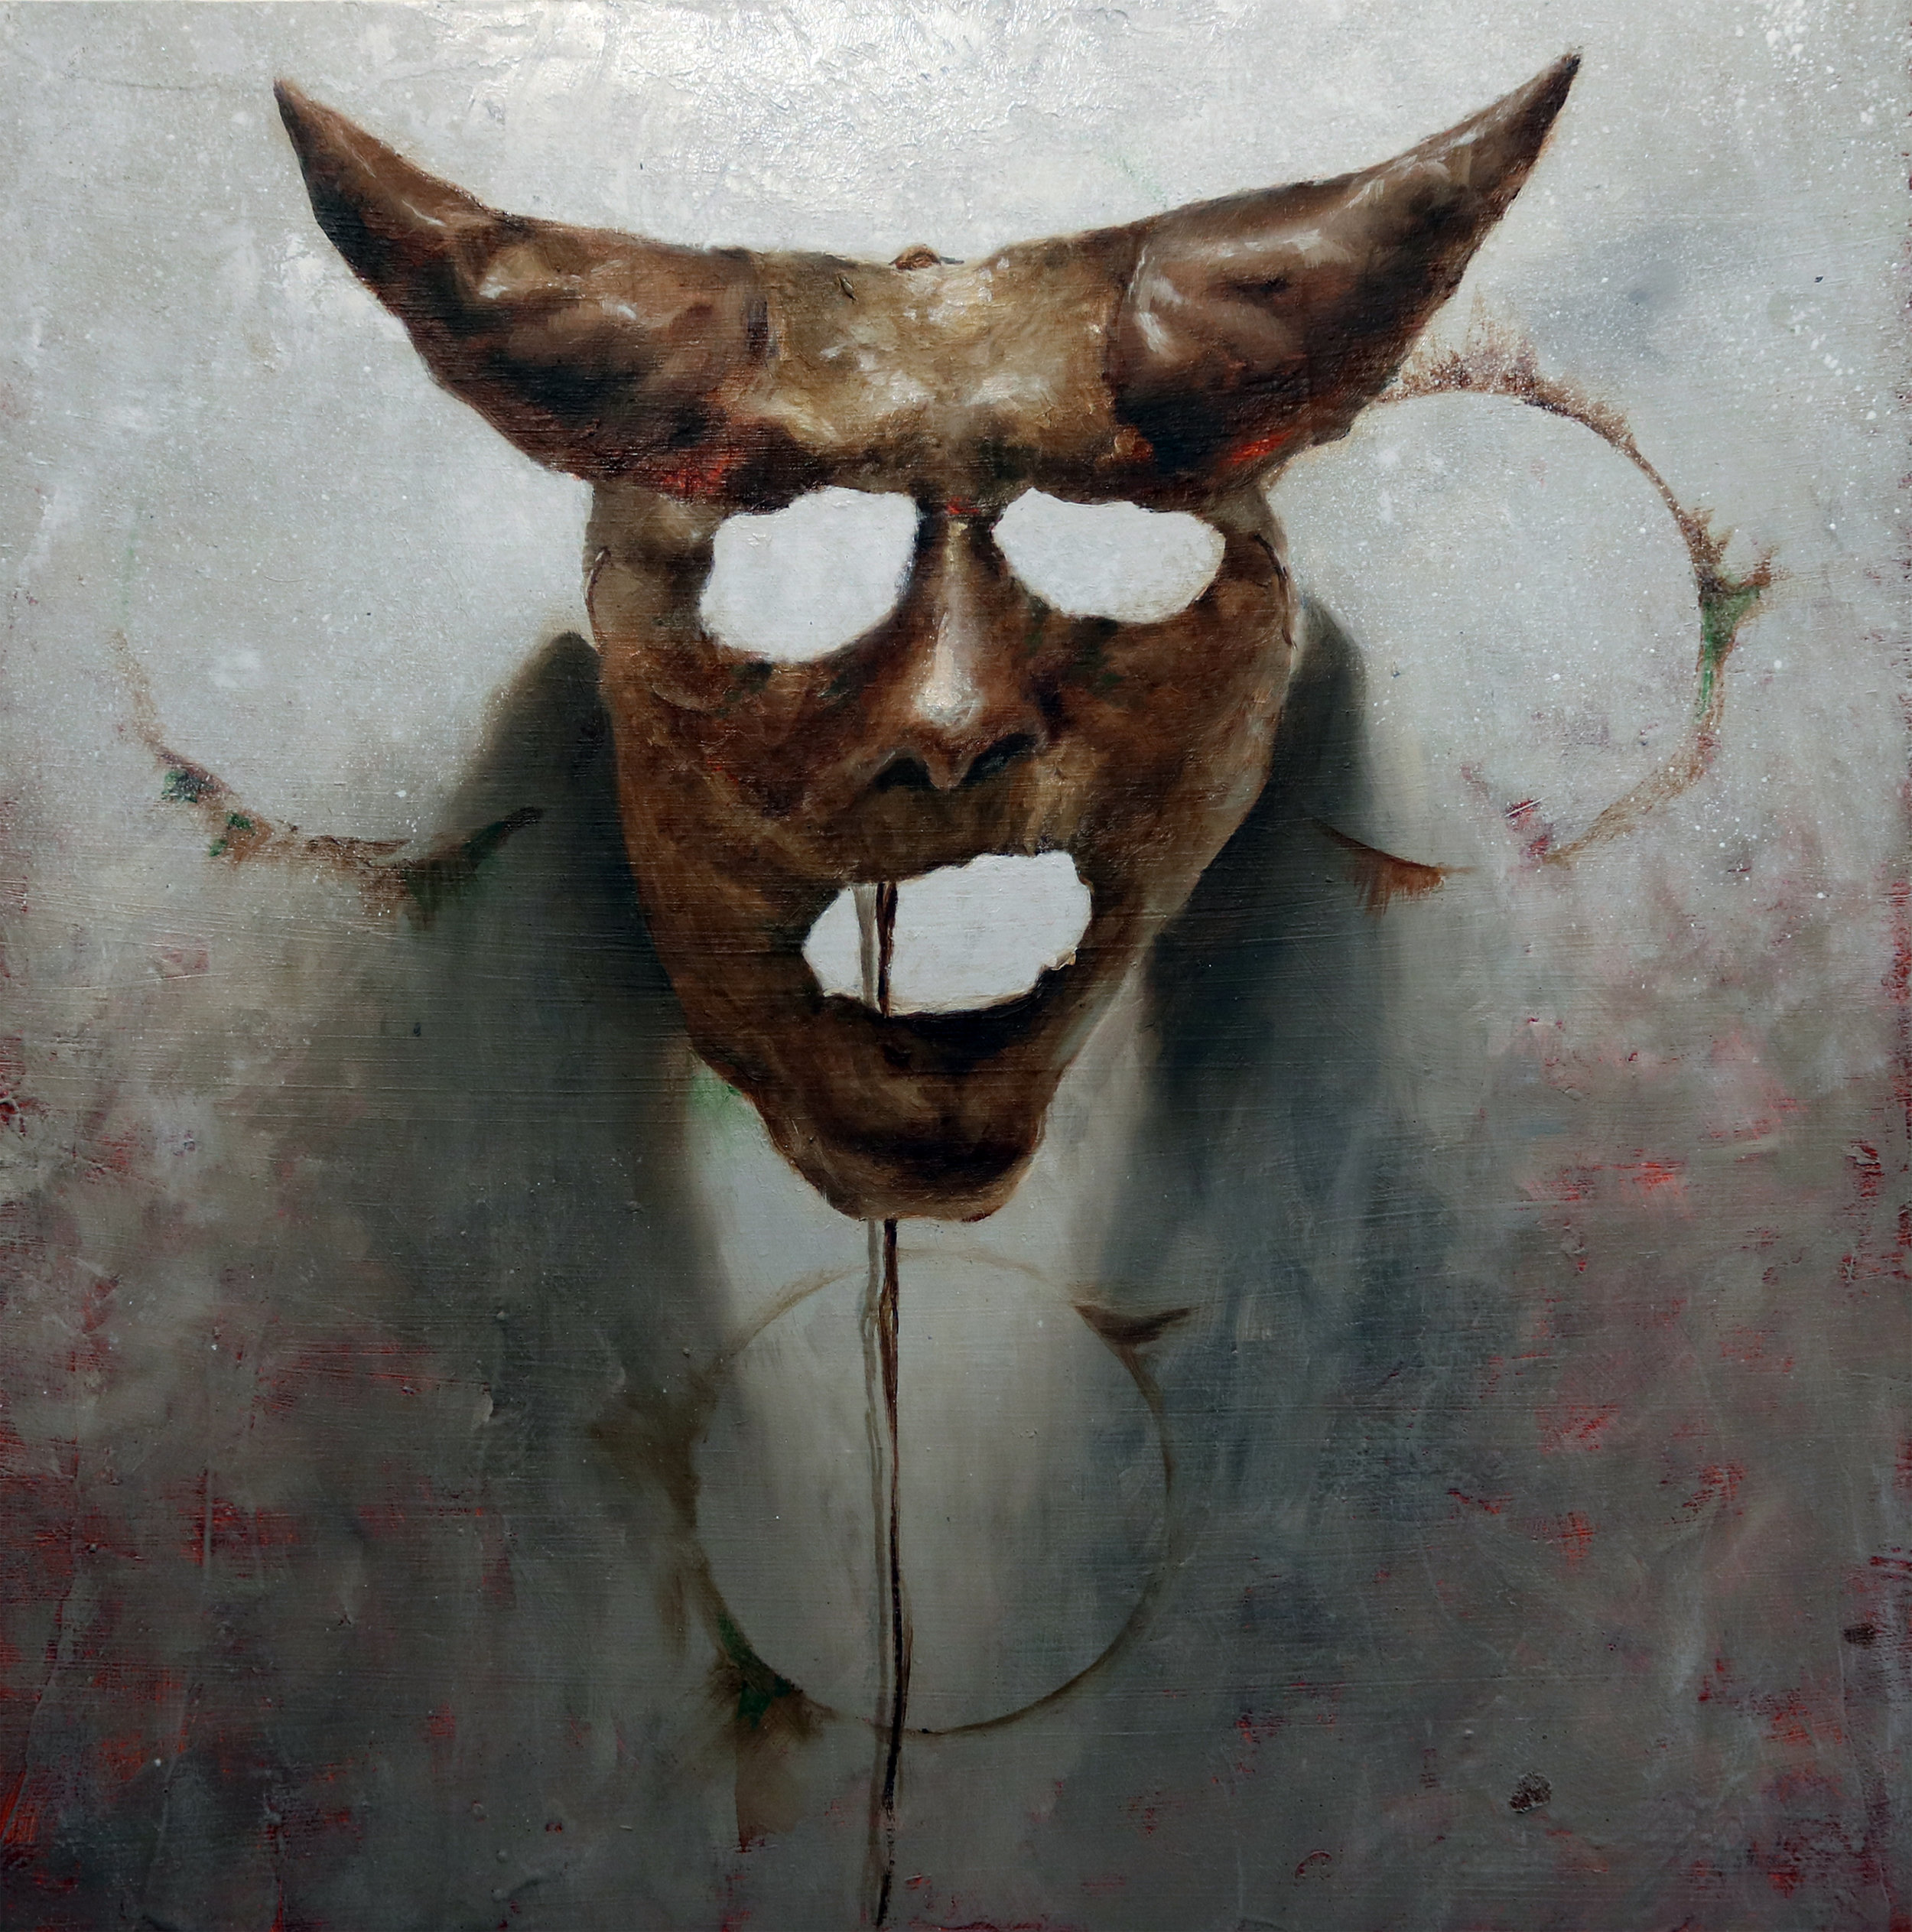  Jotham Malavé  Mascara chamanistica  Oil on canvas  16” x 16”  2018 